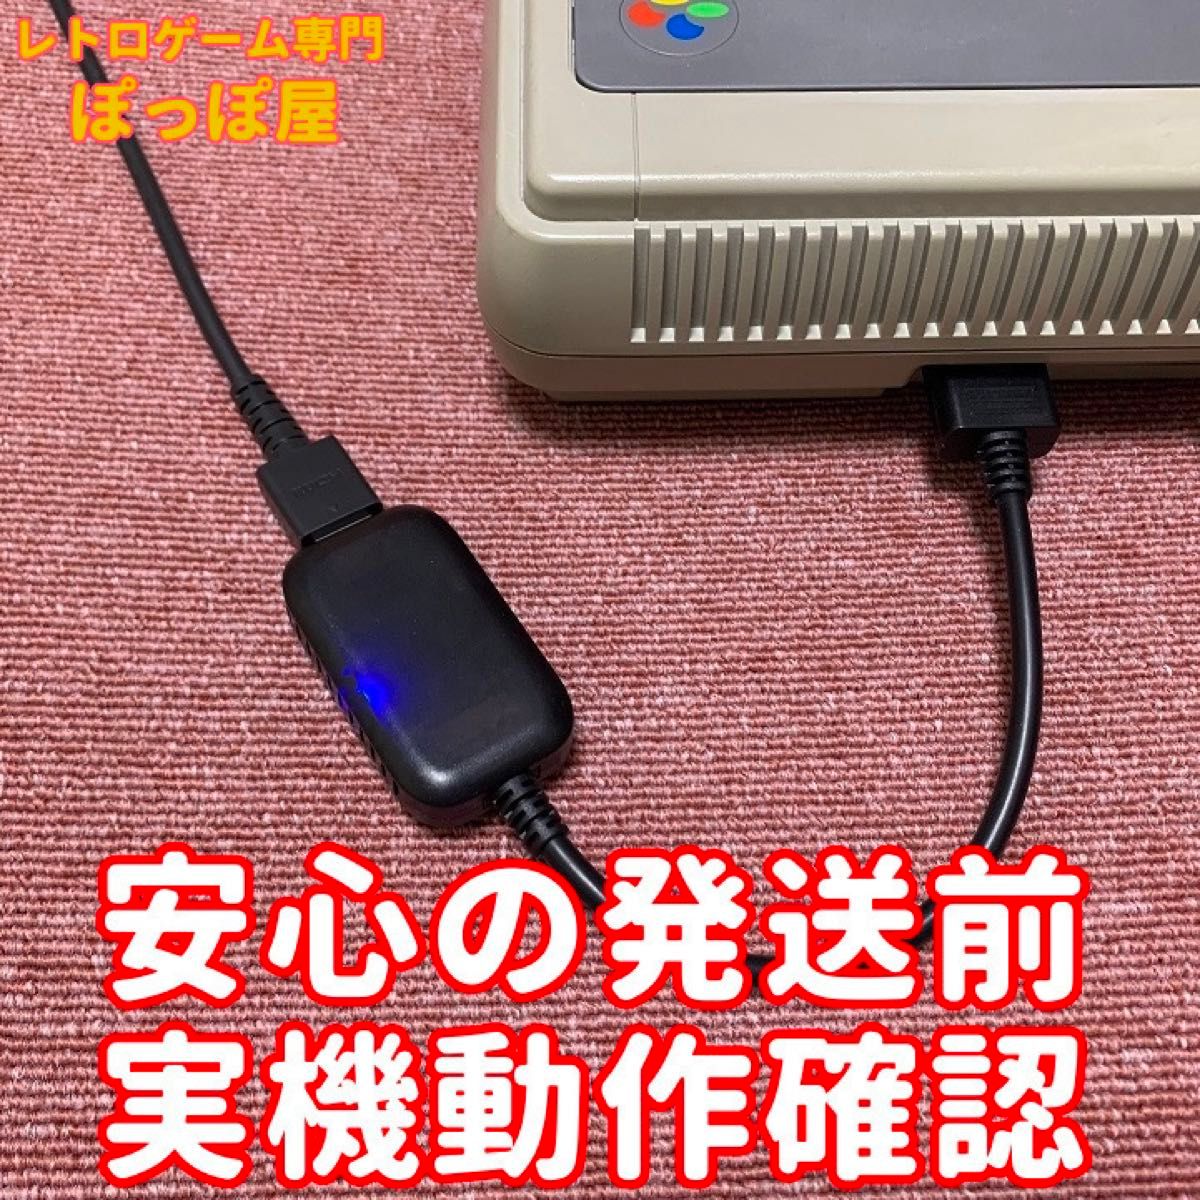 スーパー ファミコン ニンテンドー64 ゲームキューブ 対応 HDMIコンバーター S端子 信号 変換  AVケーブル代用可能